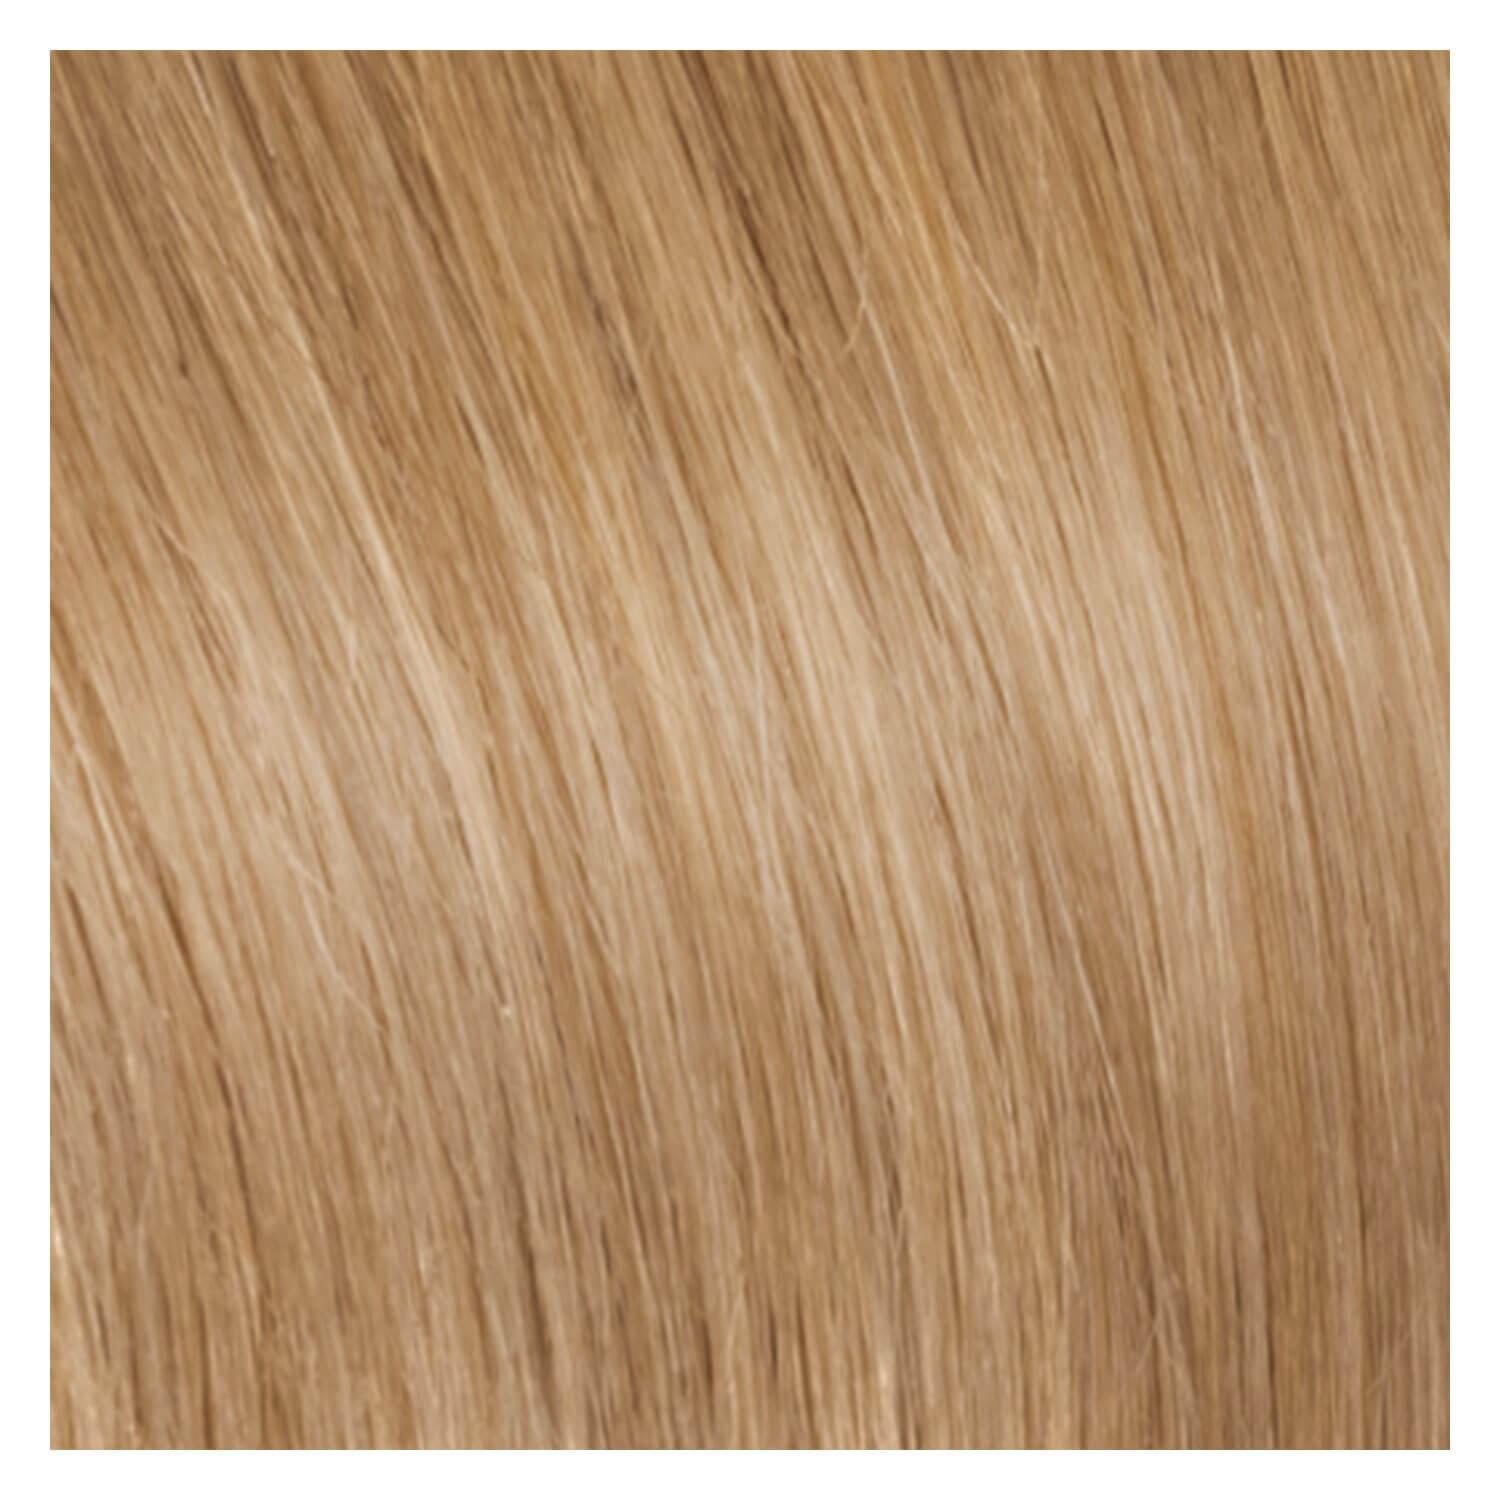 SHE Bonding-System Hair Extensions Straight - 26 Honey Blond 55/60cm